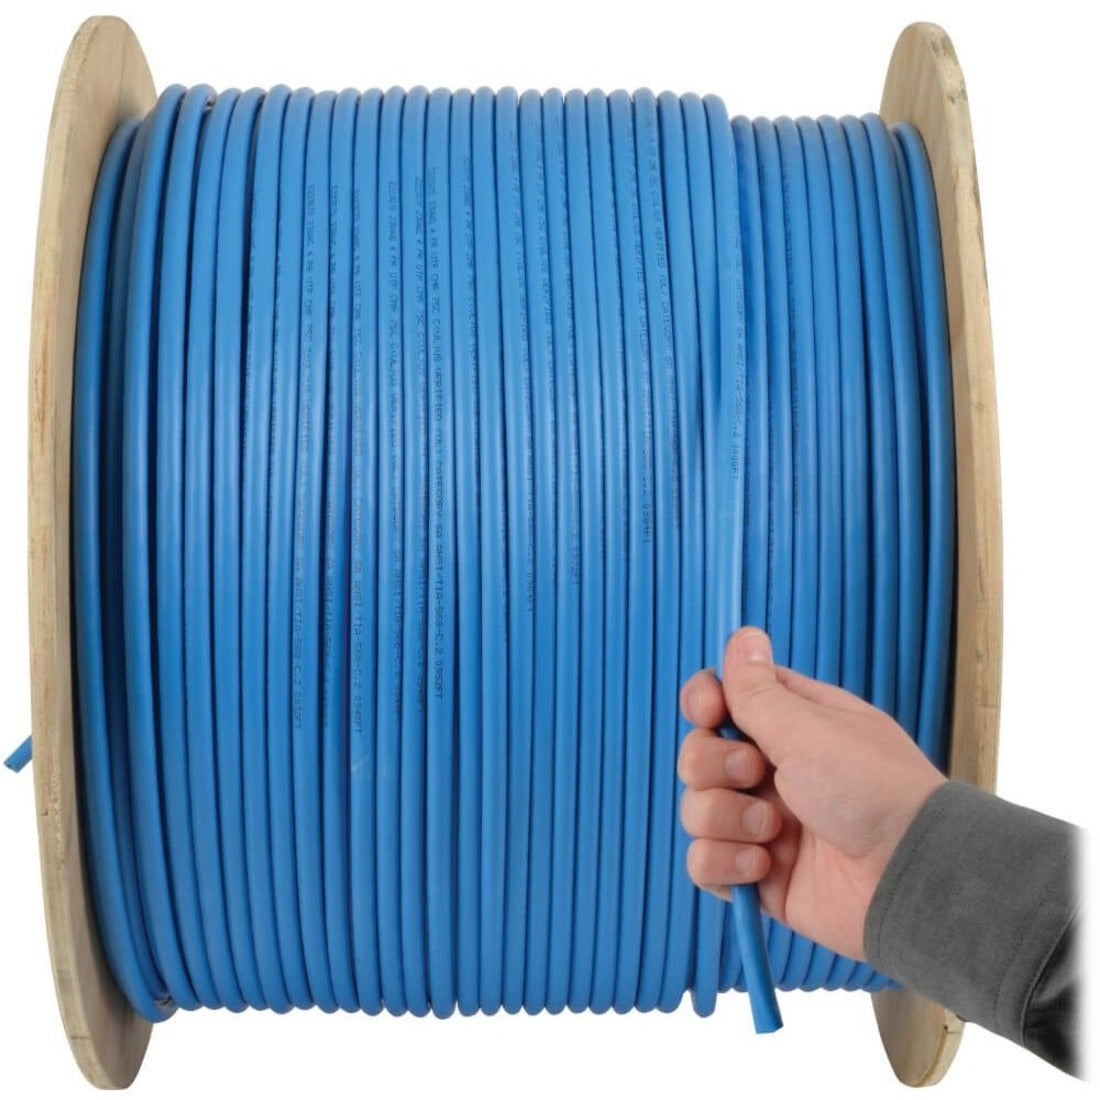 Tripp Lite N024-01K-BL Cat5e 350 MHz Bulk Solid-Core Plenum-Rated PVC Cable, Blue, 1000 ft